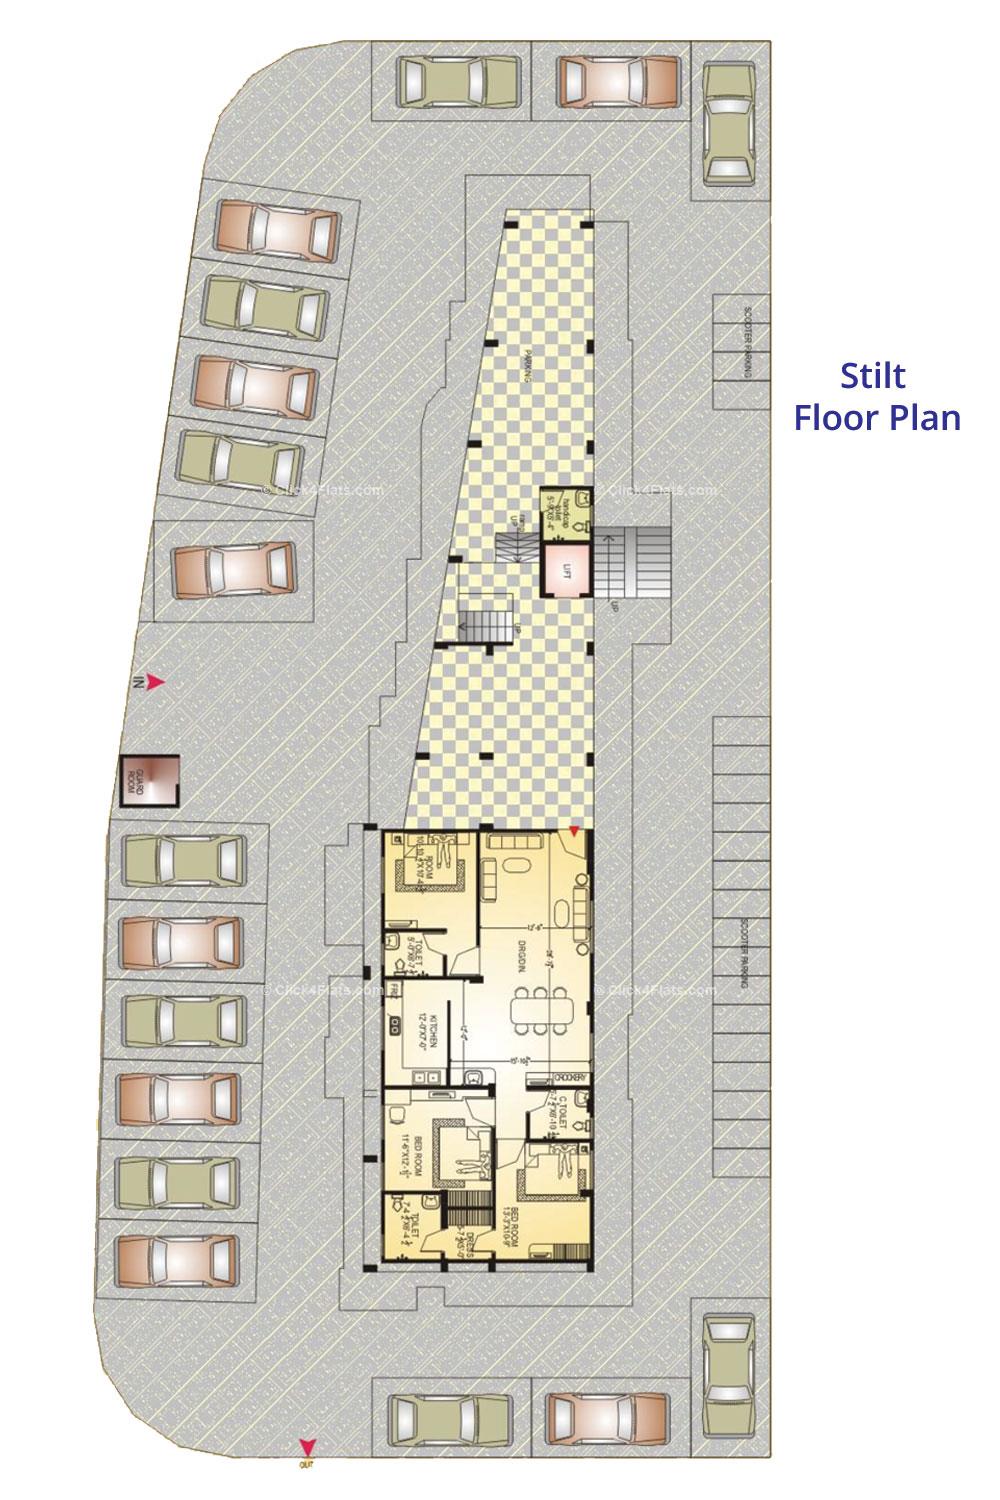 Midas Residency Stilt Floor Plan